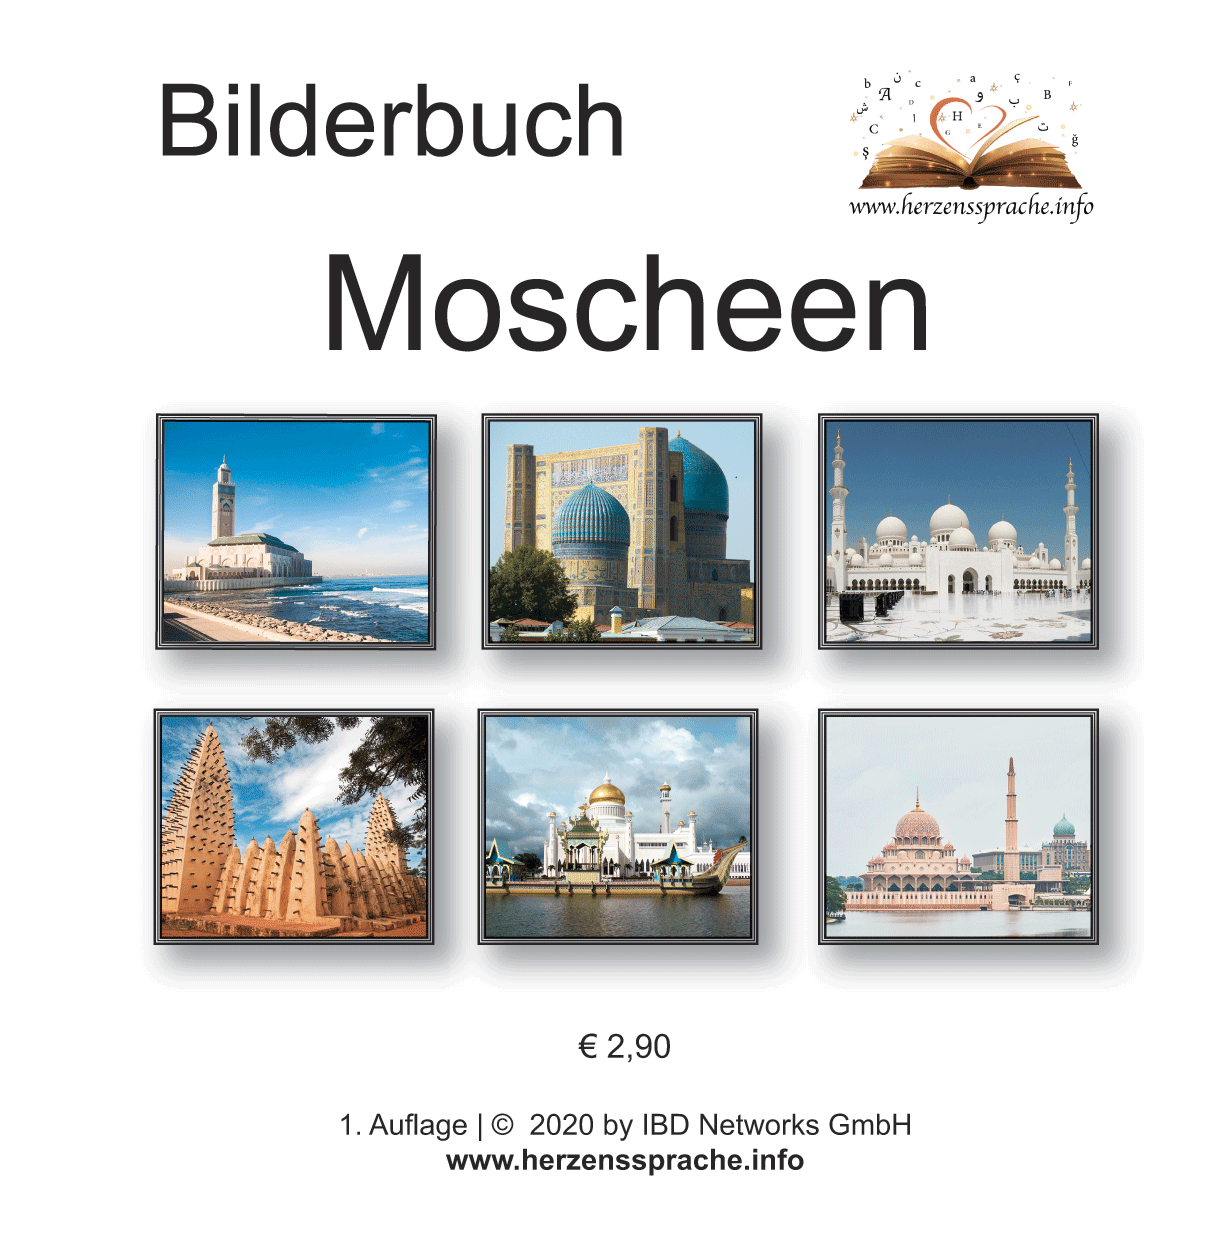 Bilderbuch Moscheen